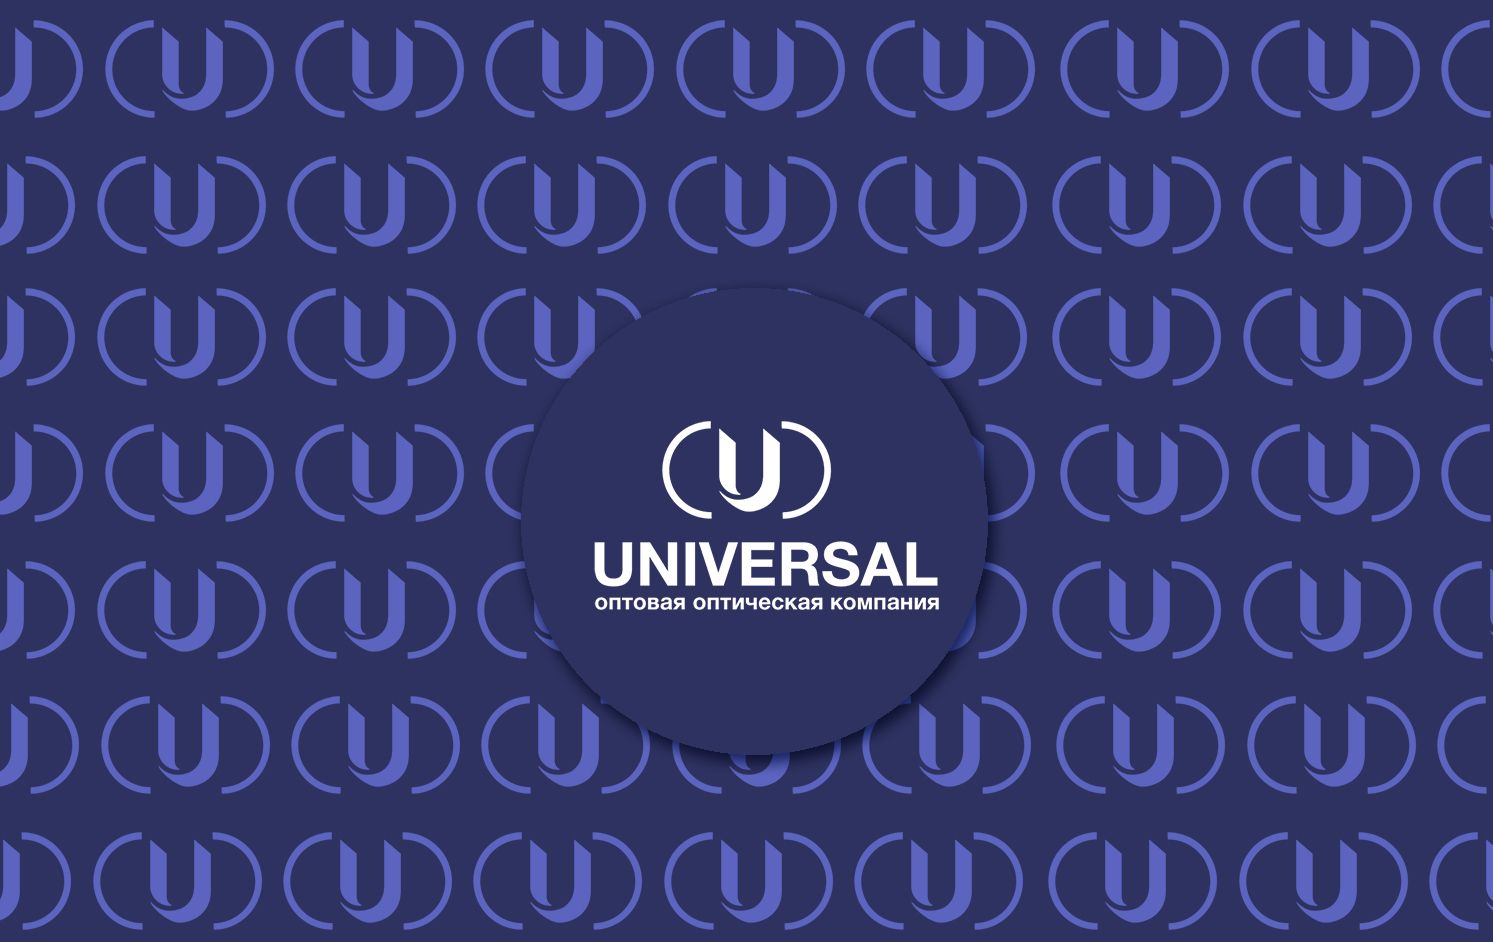 Логотип и ФС для Universal - дизайнер SmolinDenis